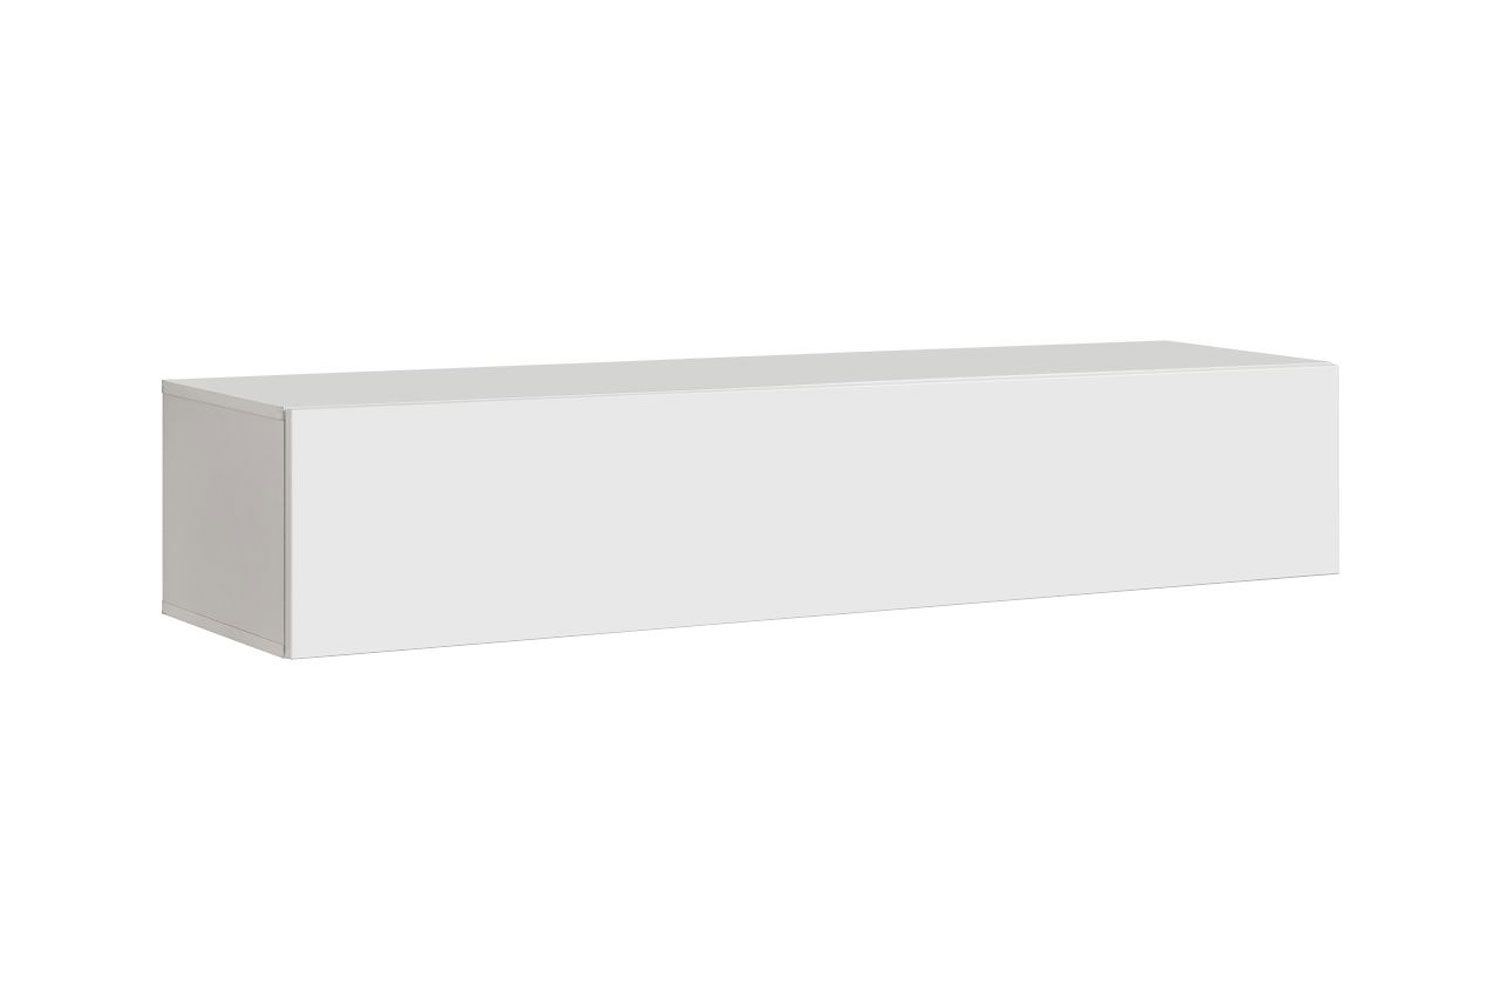 Pensile Raudberg 33, colore: bianco - Dimensioni: 30 x 160 x 29 cm (A x L x P), con due vani